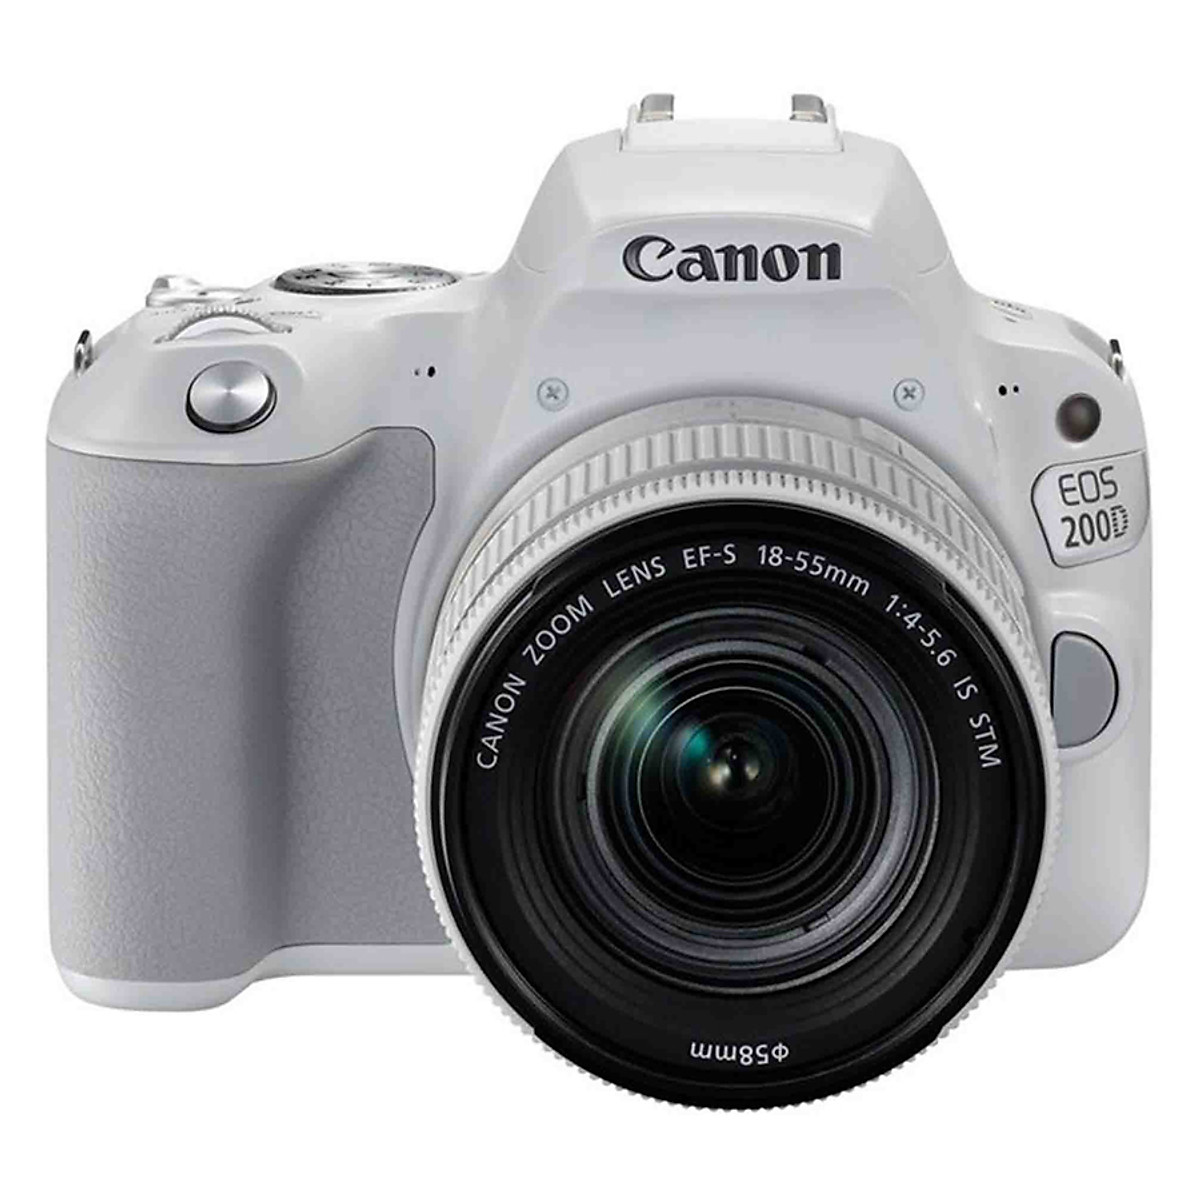 Máy ảnh Canon trắng là sự lựa chọn lý tưởng cho những ai đam mê nhiếp ảnh. Với kiểu dáng tinh xảo, đầy sáng tạo và độ phân giải cao, máy ảnh này chắc chắn sẽ làm cho bức ảnh được khiêm tốn trở nên độc đáo và sáng tạo hơn. Hãy chiêm ngưỡng vẻ đẹp của những tác phẩm sáng tạo được tạo ra bởi máy ảnh này.